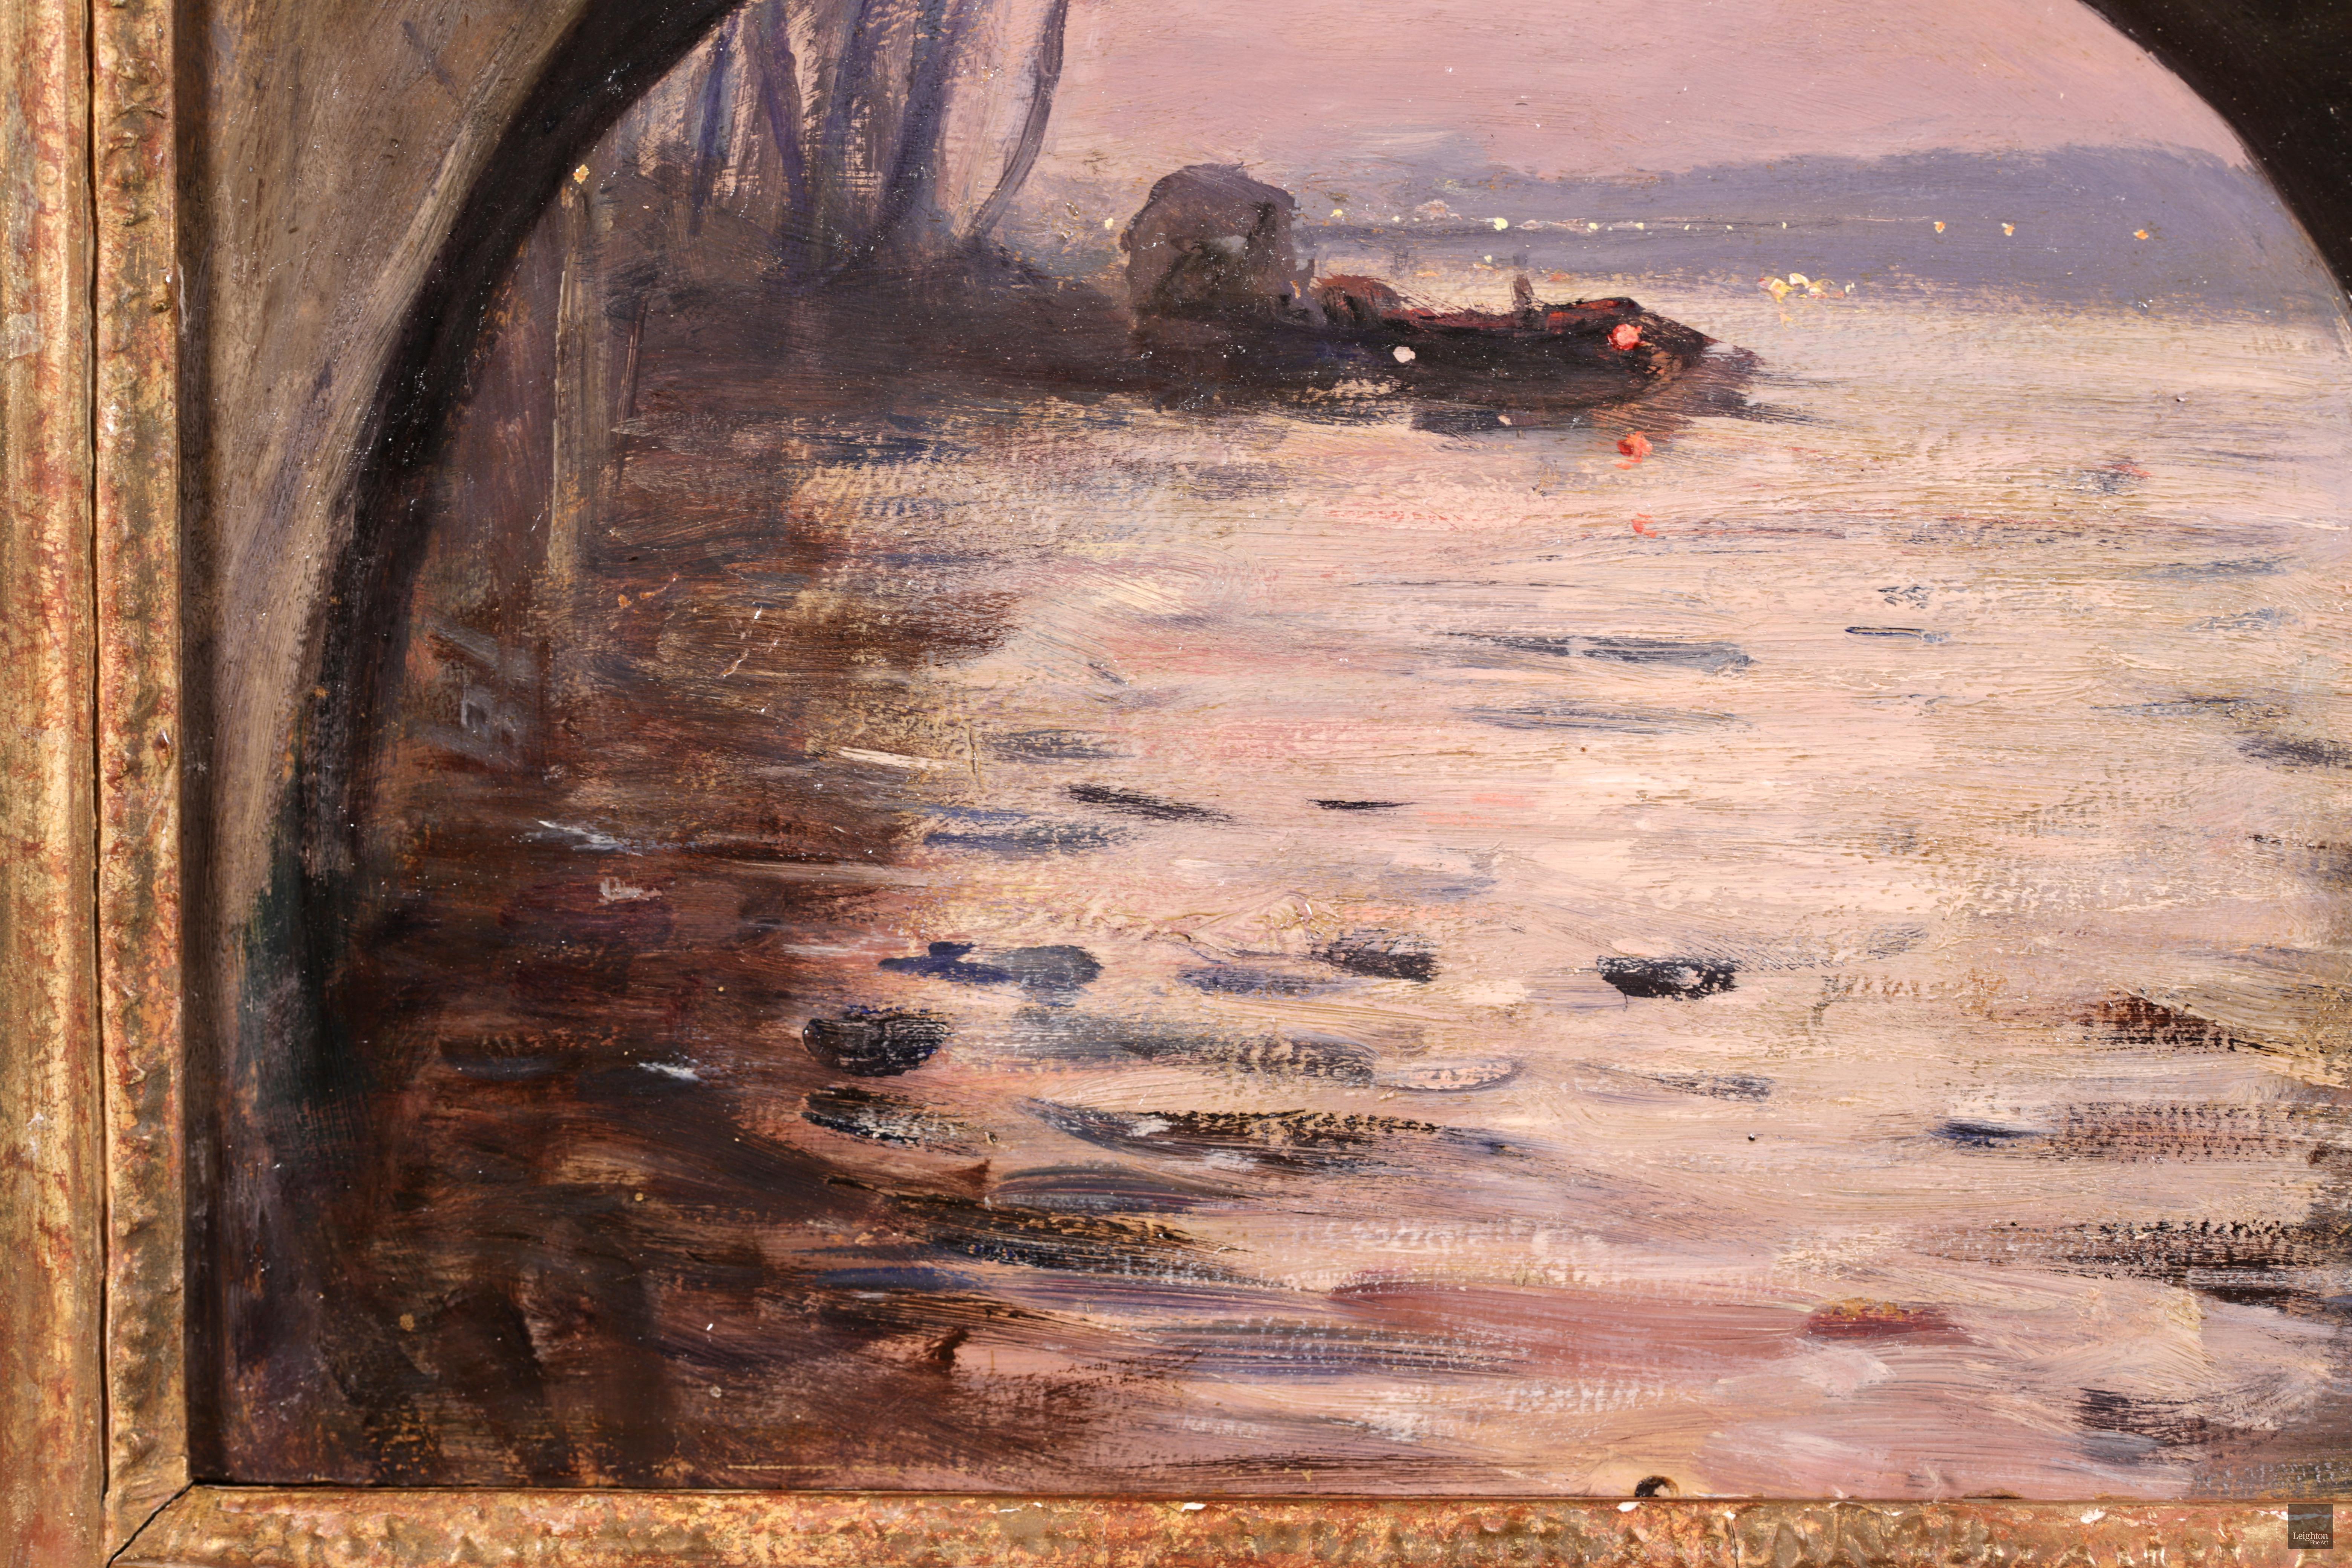 Below the Pont Marie - Paris 1889, Impressionist Oil Riverscape by Gabriel Loppe 1